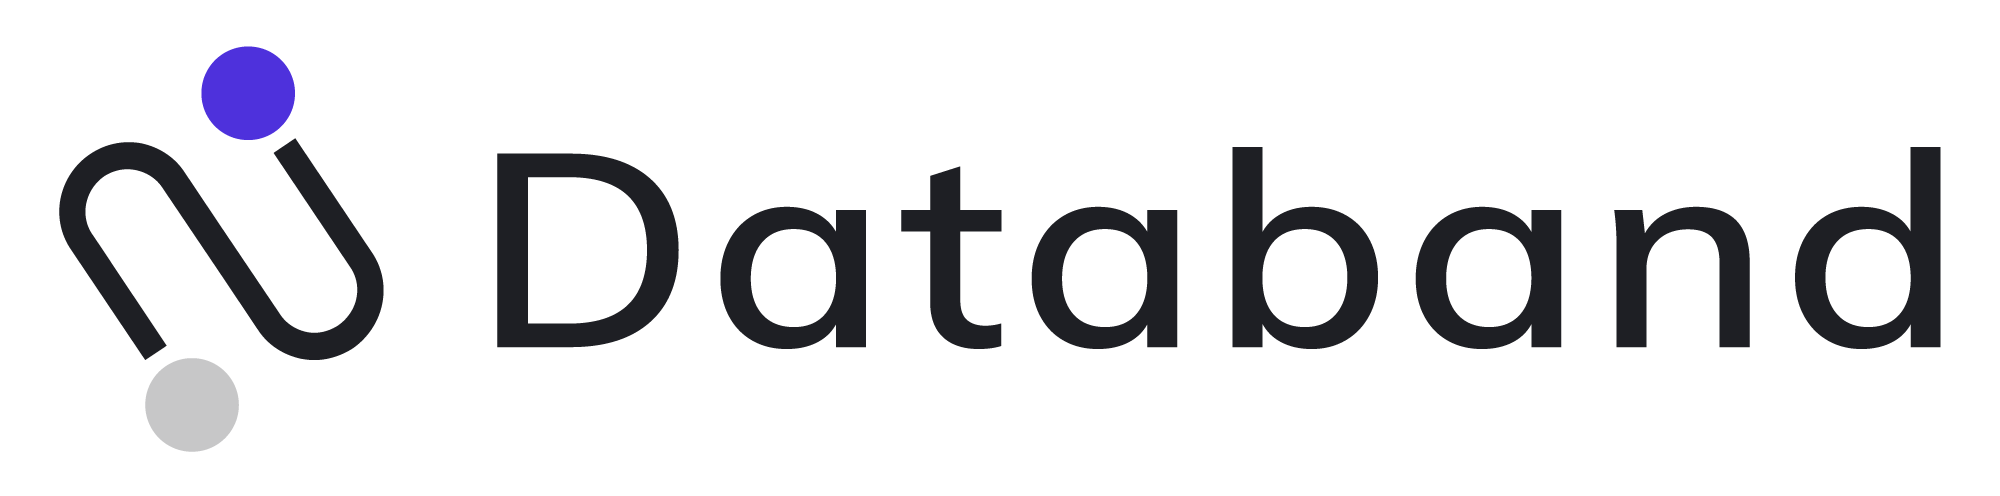 Databand-logo-white-background